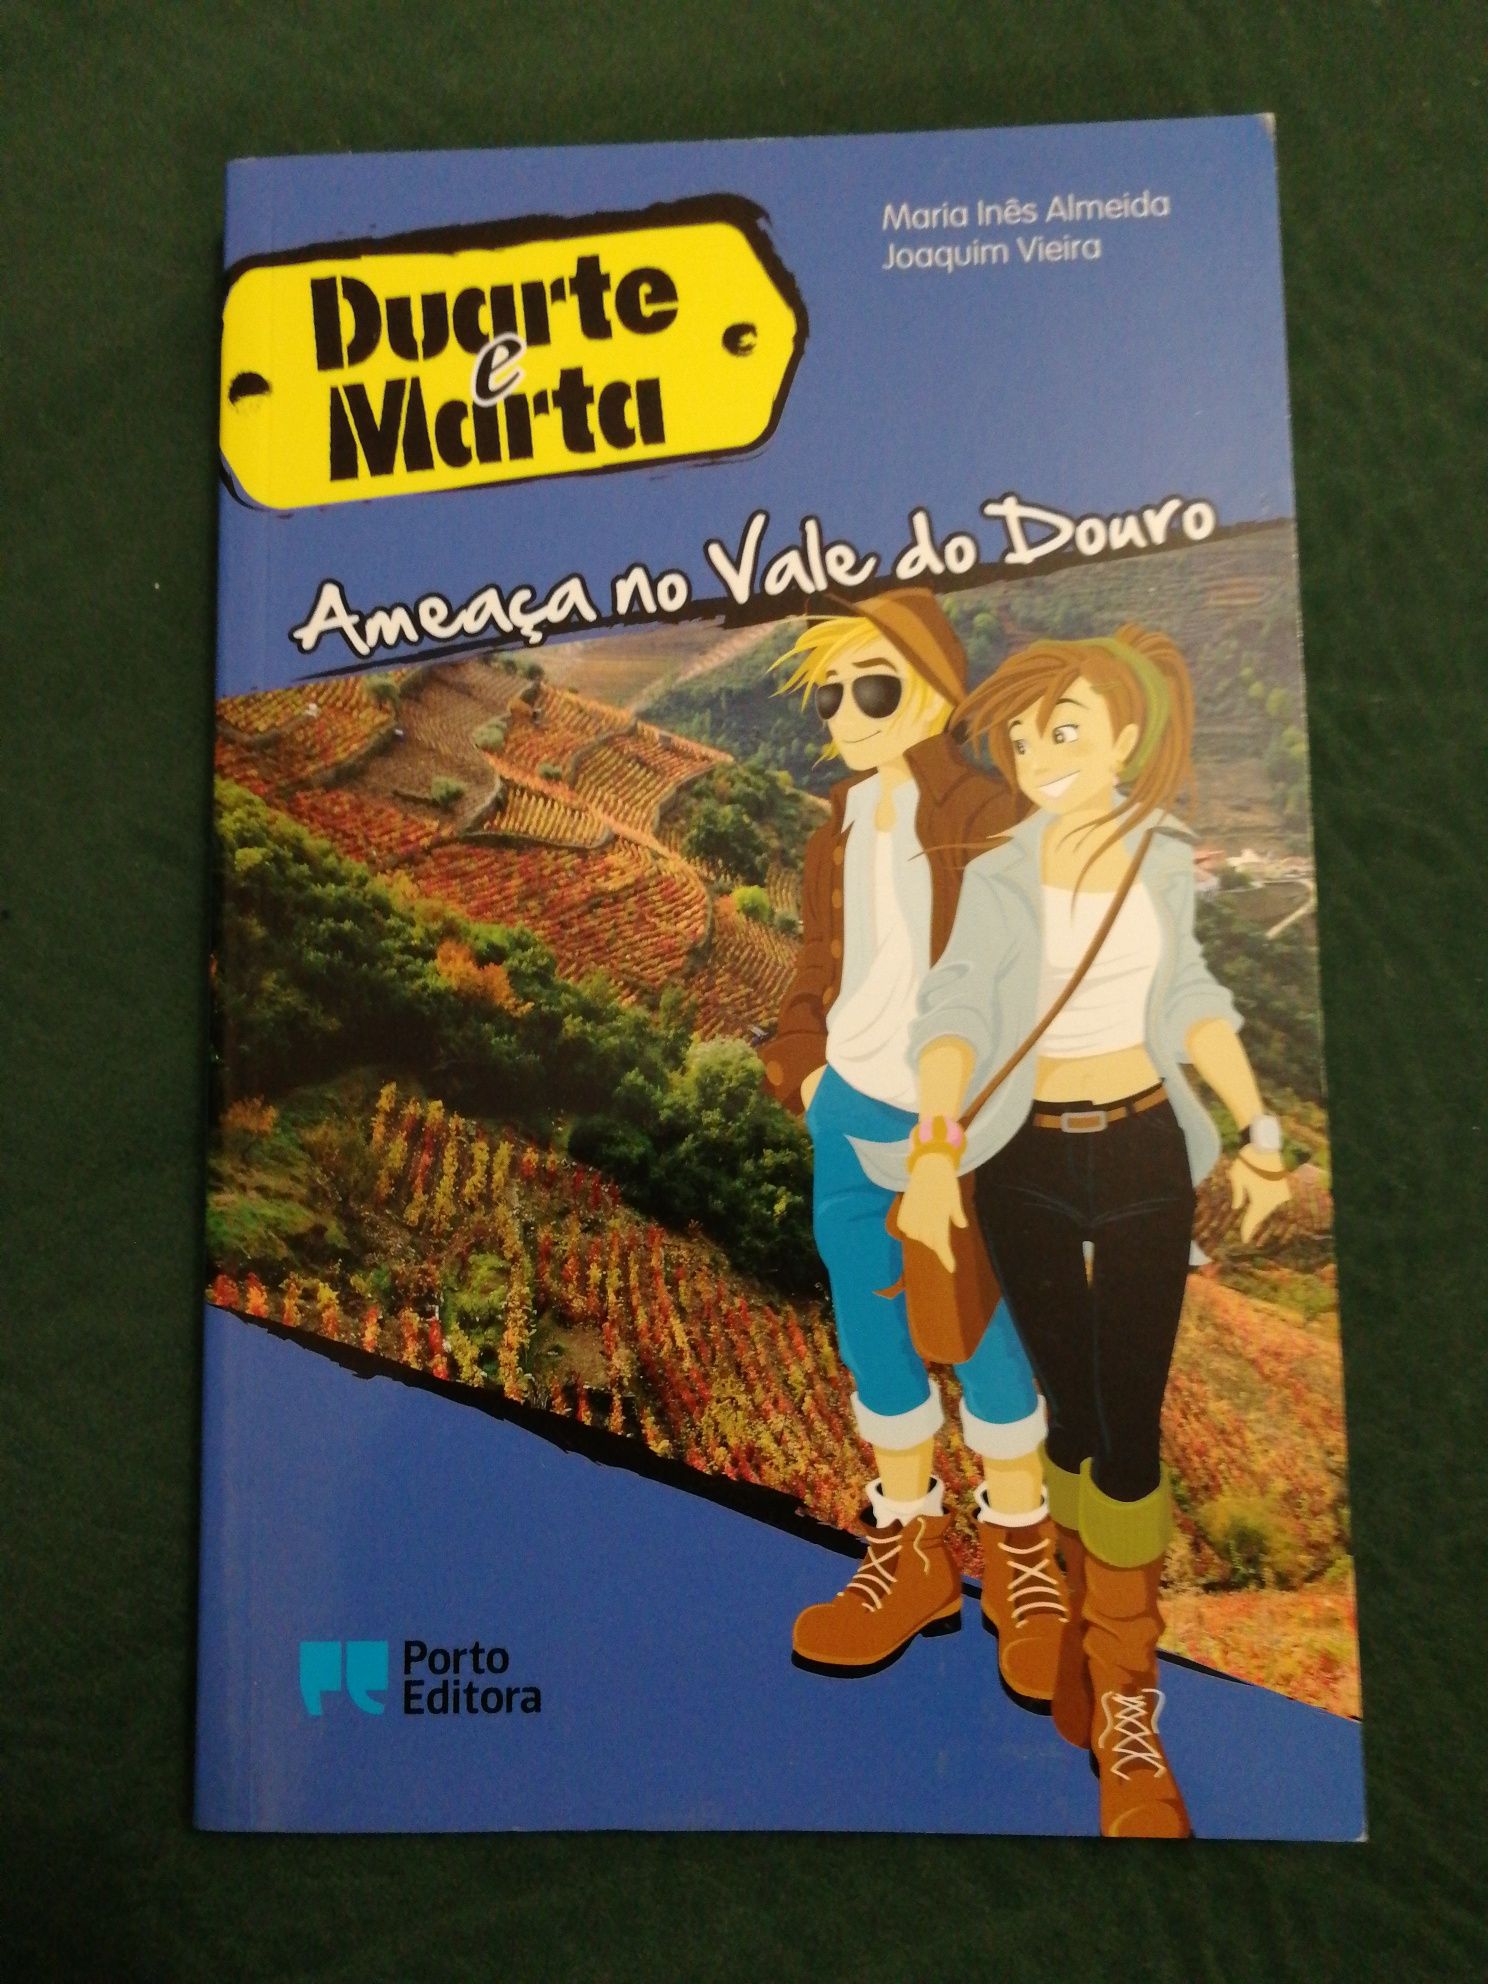 Livro "Duarte e Marta - Ameaça no Vale do Douro"